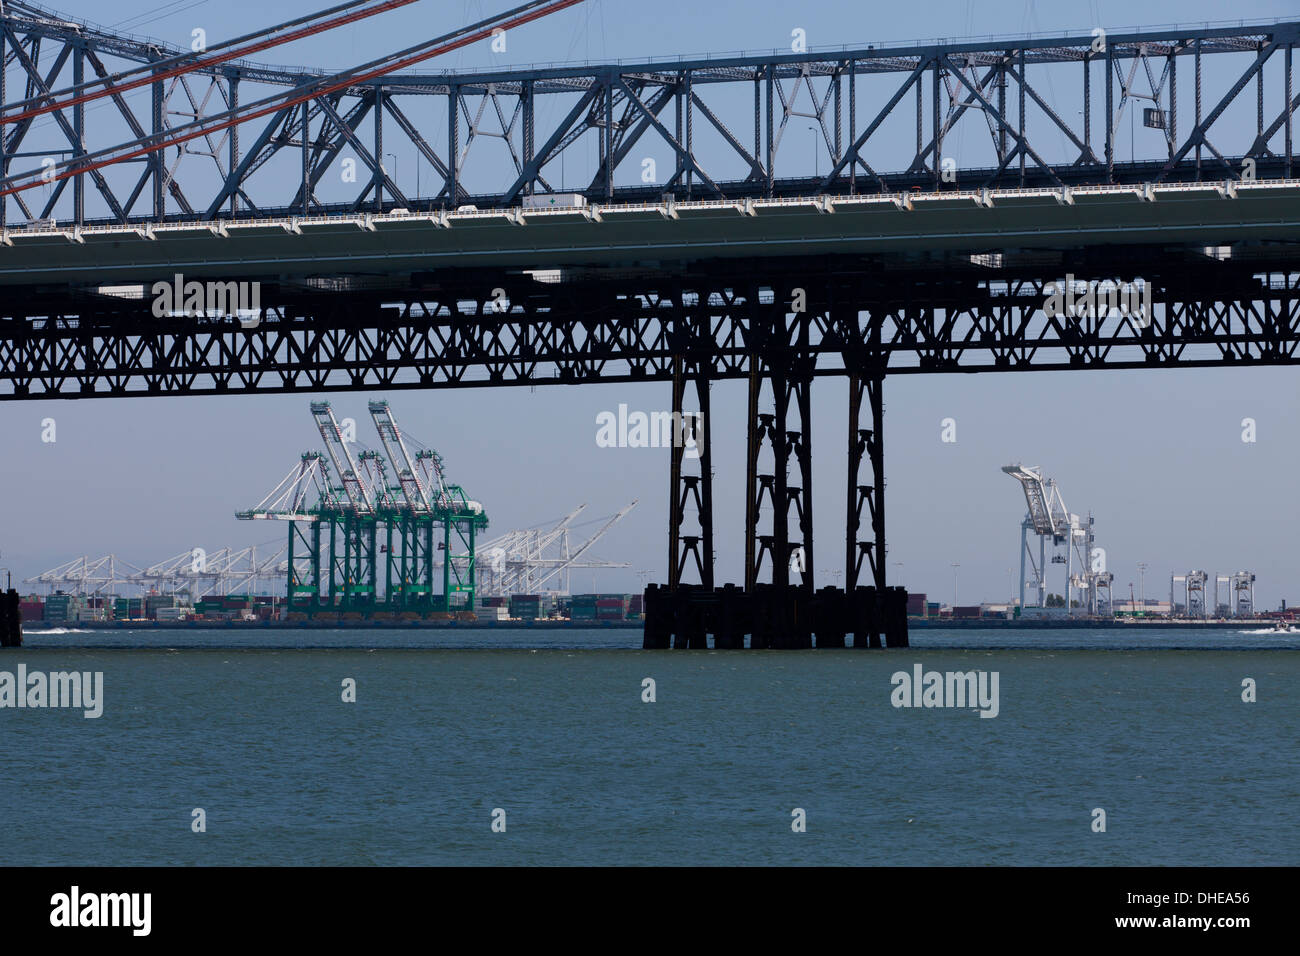 Gantry cranes under Bay Bridge - San Francisco, California USA Stock Photo